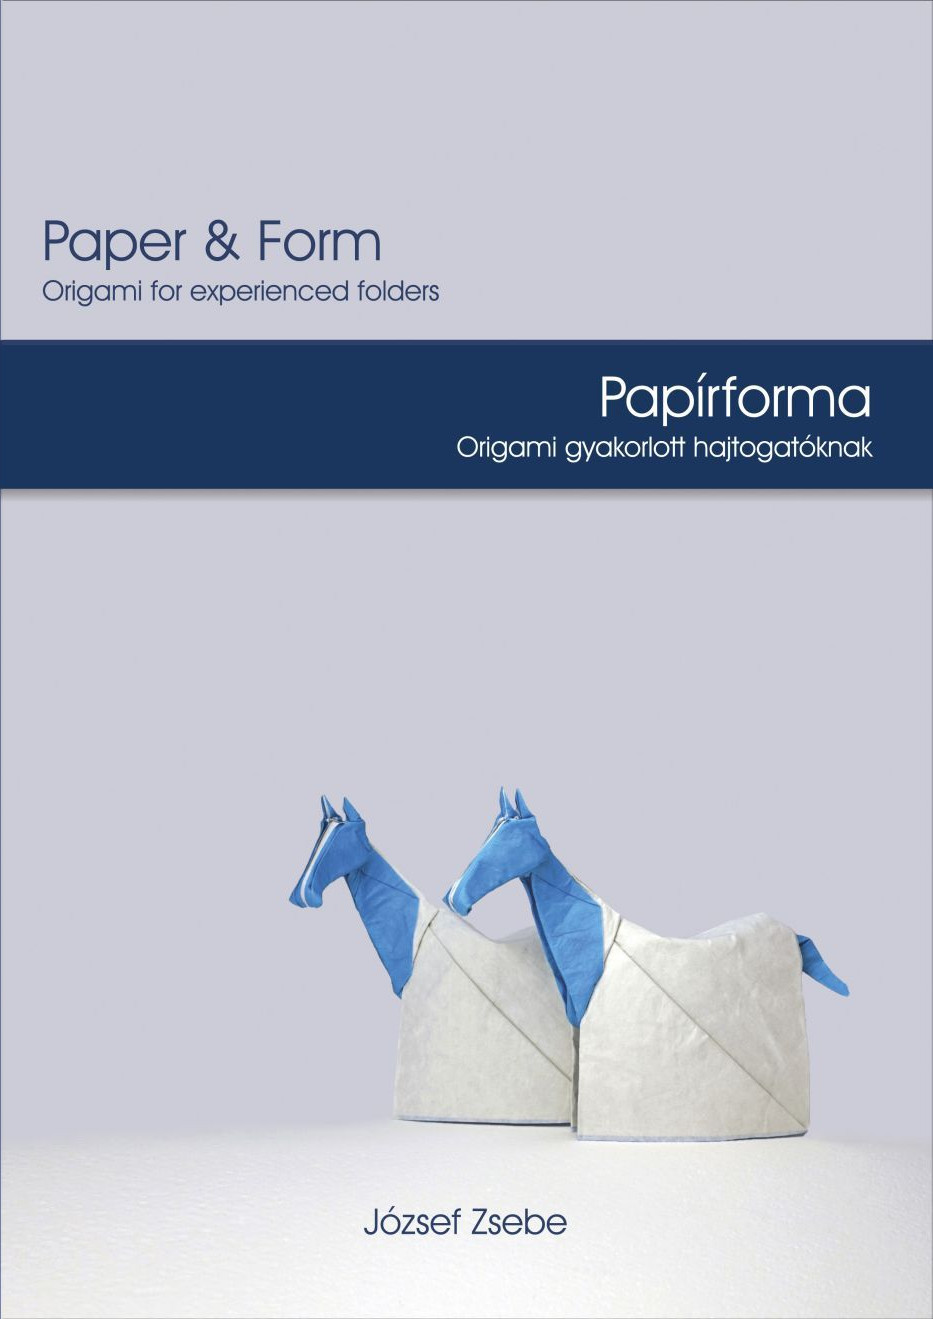 Paper & Form - Papírforma : page 72.